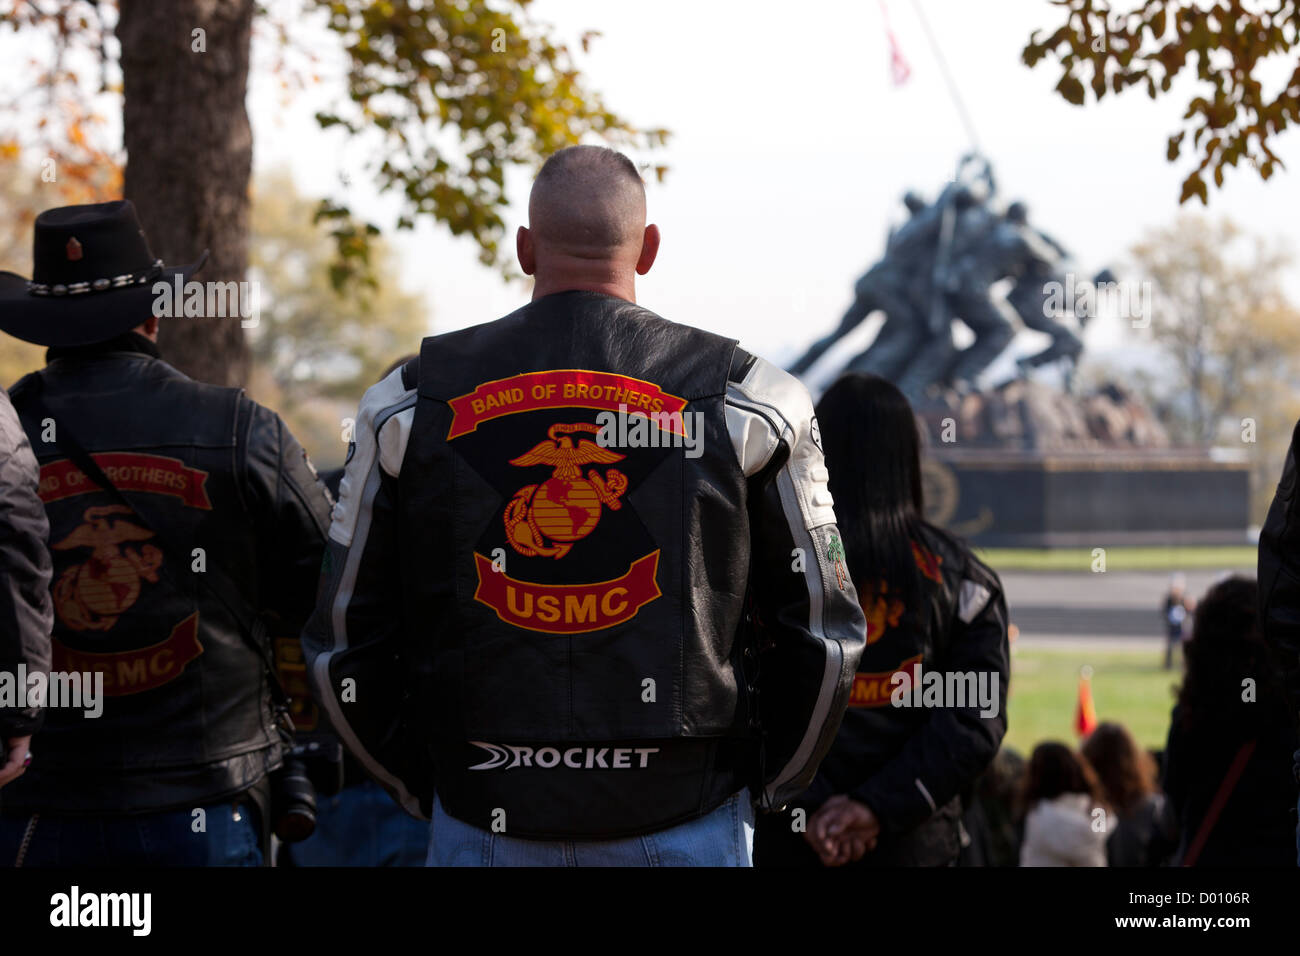 Band der Brüder USMC Motorradfahren Club-Insignien auf Jacke Stockfoto